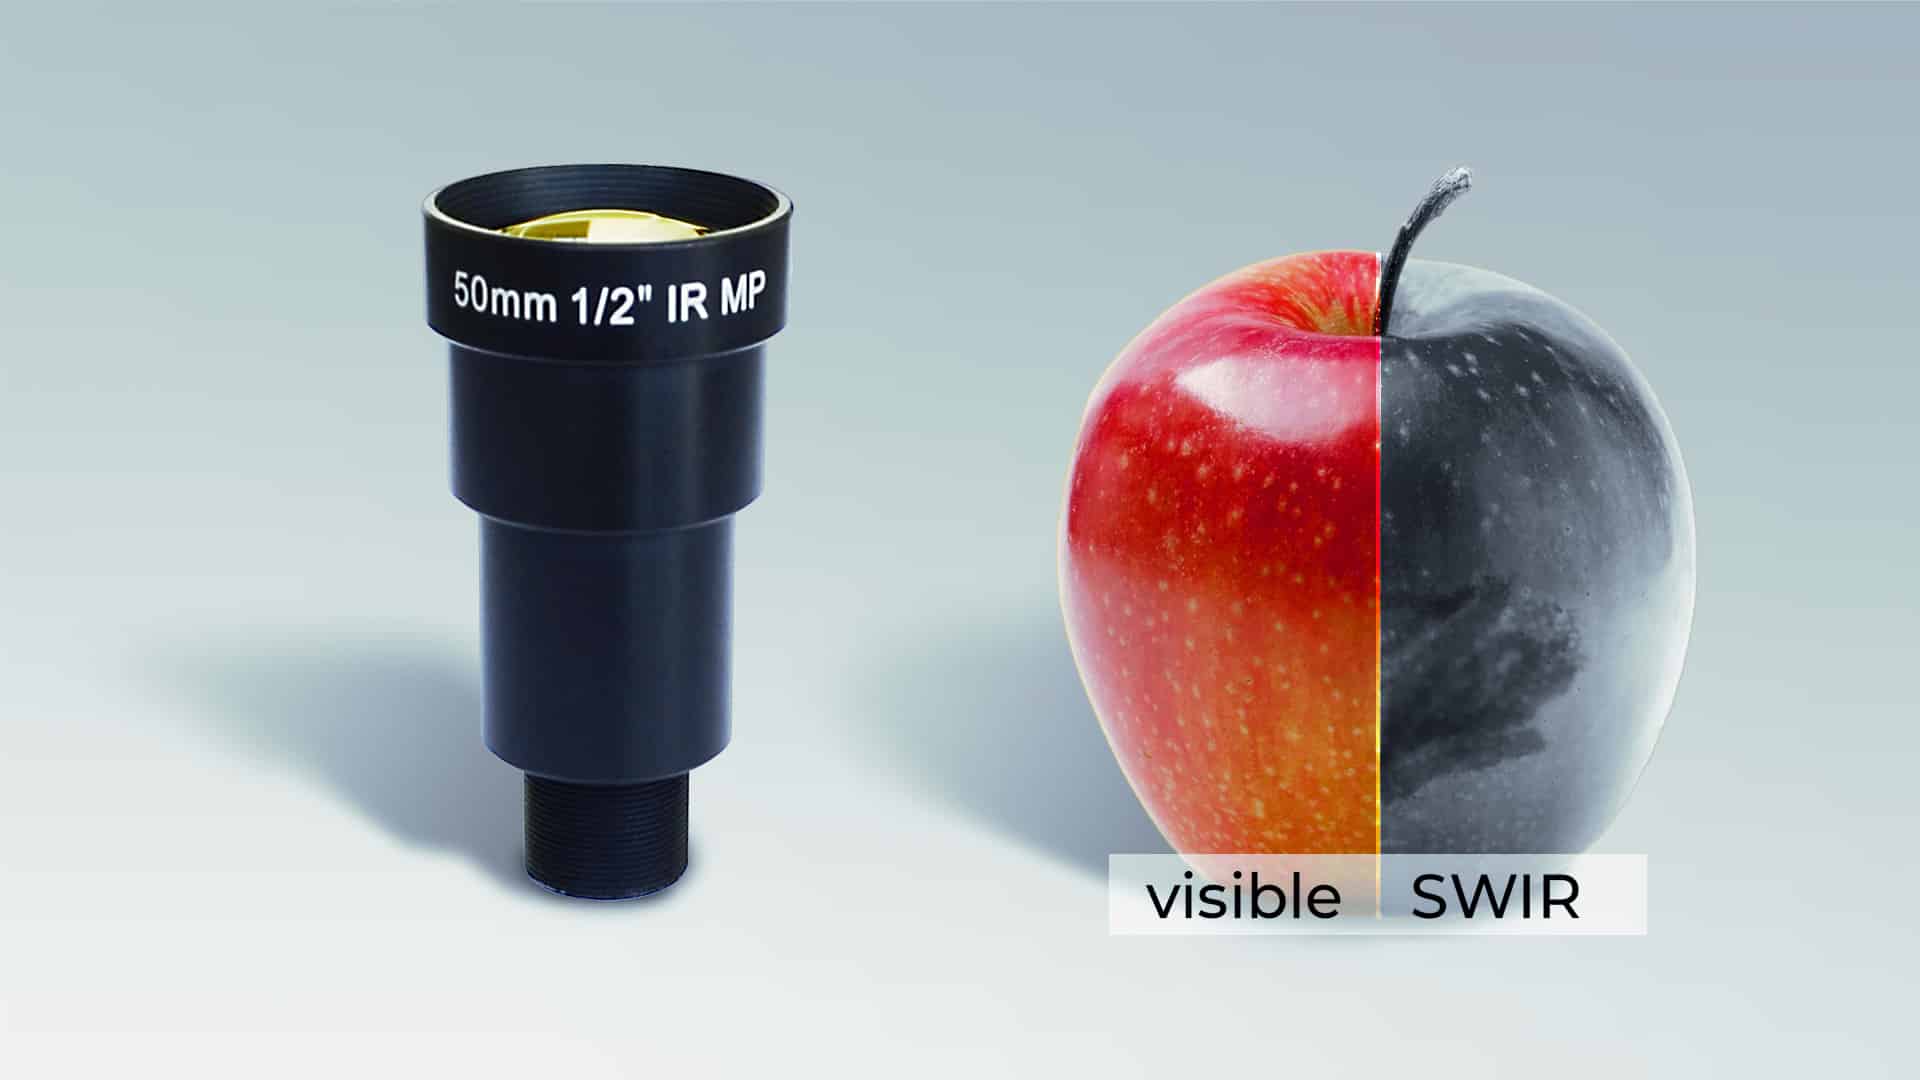 board mount / S-mount lenses for SWIR (Short wave infrared) sensors